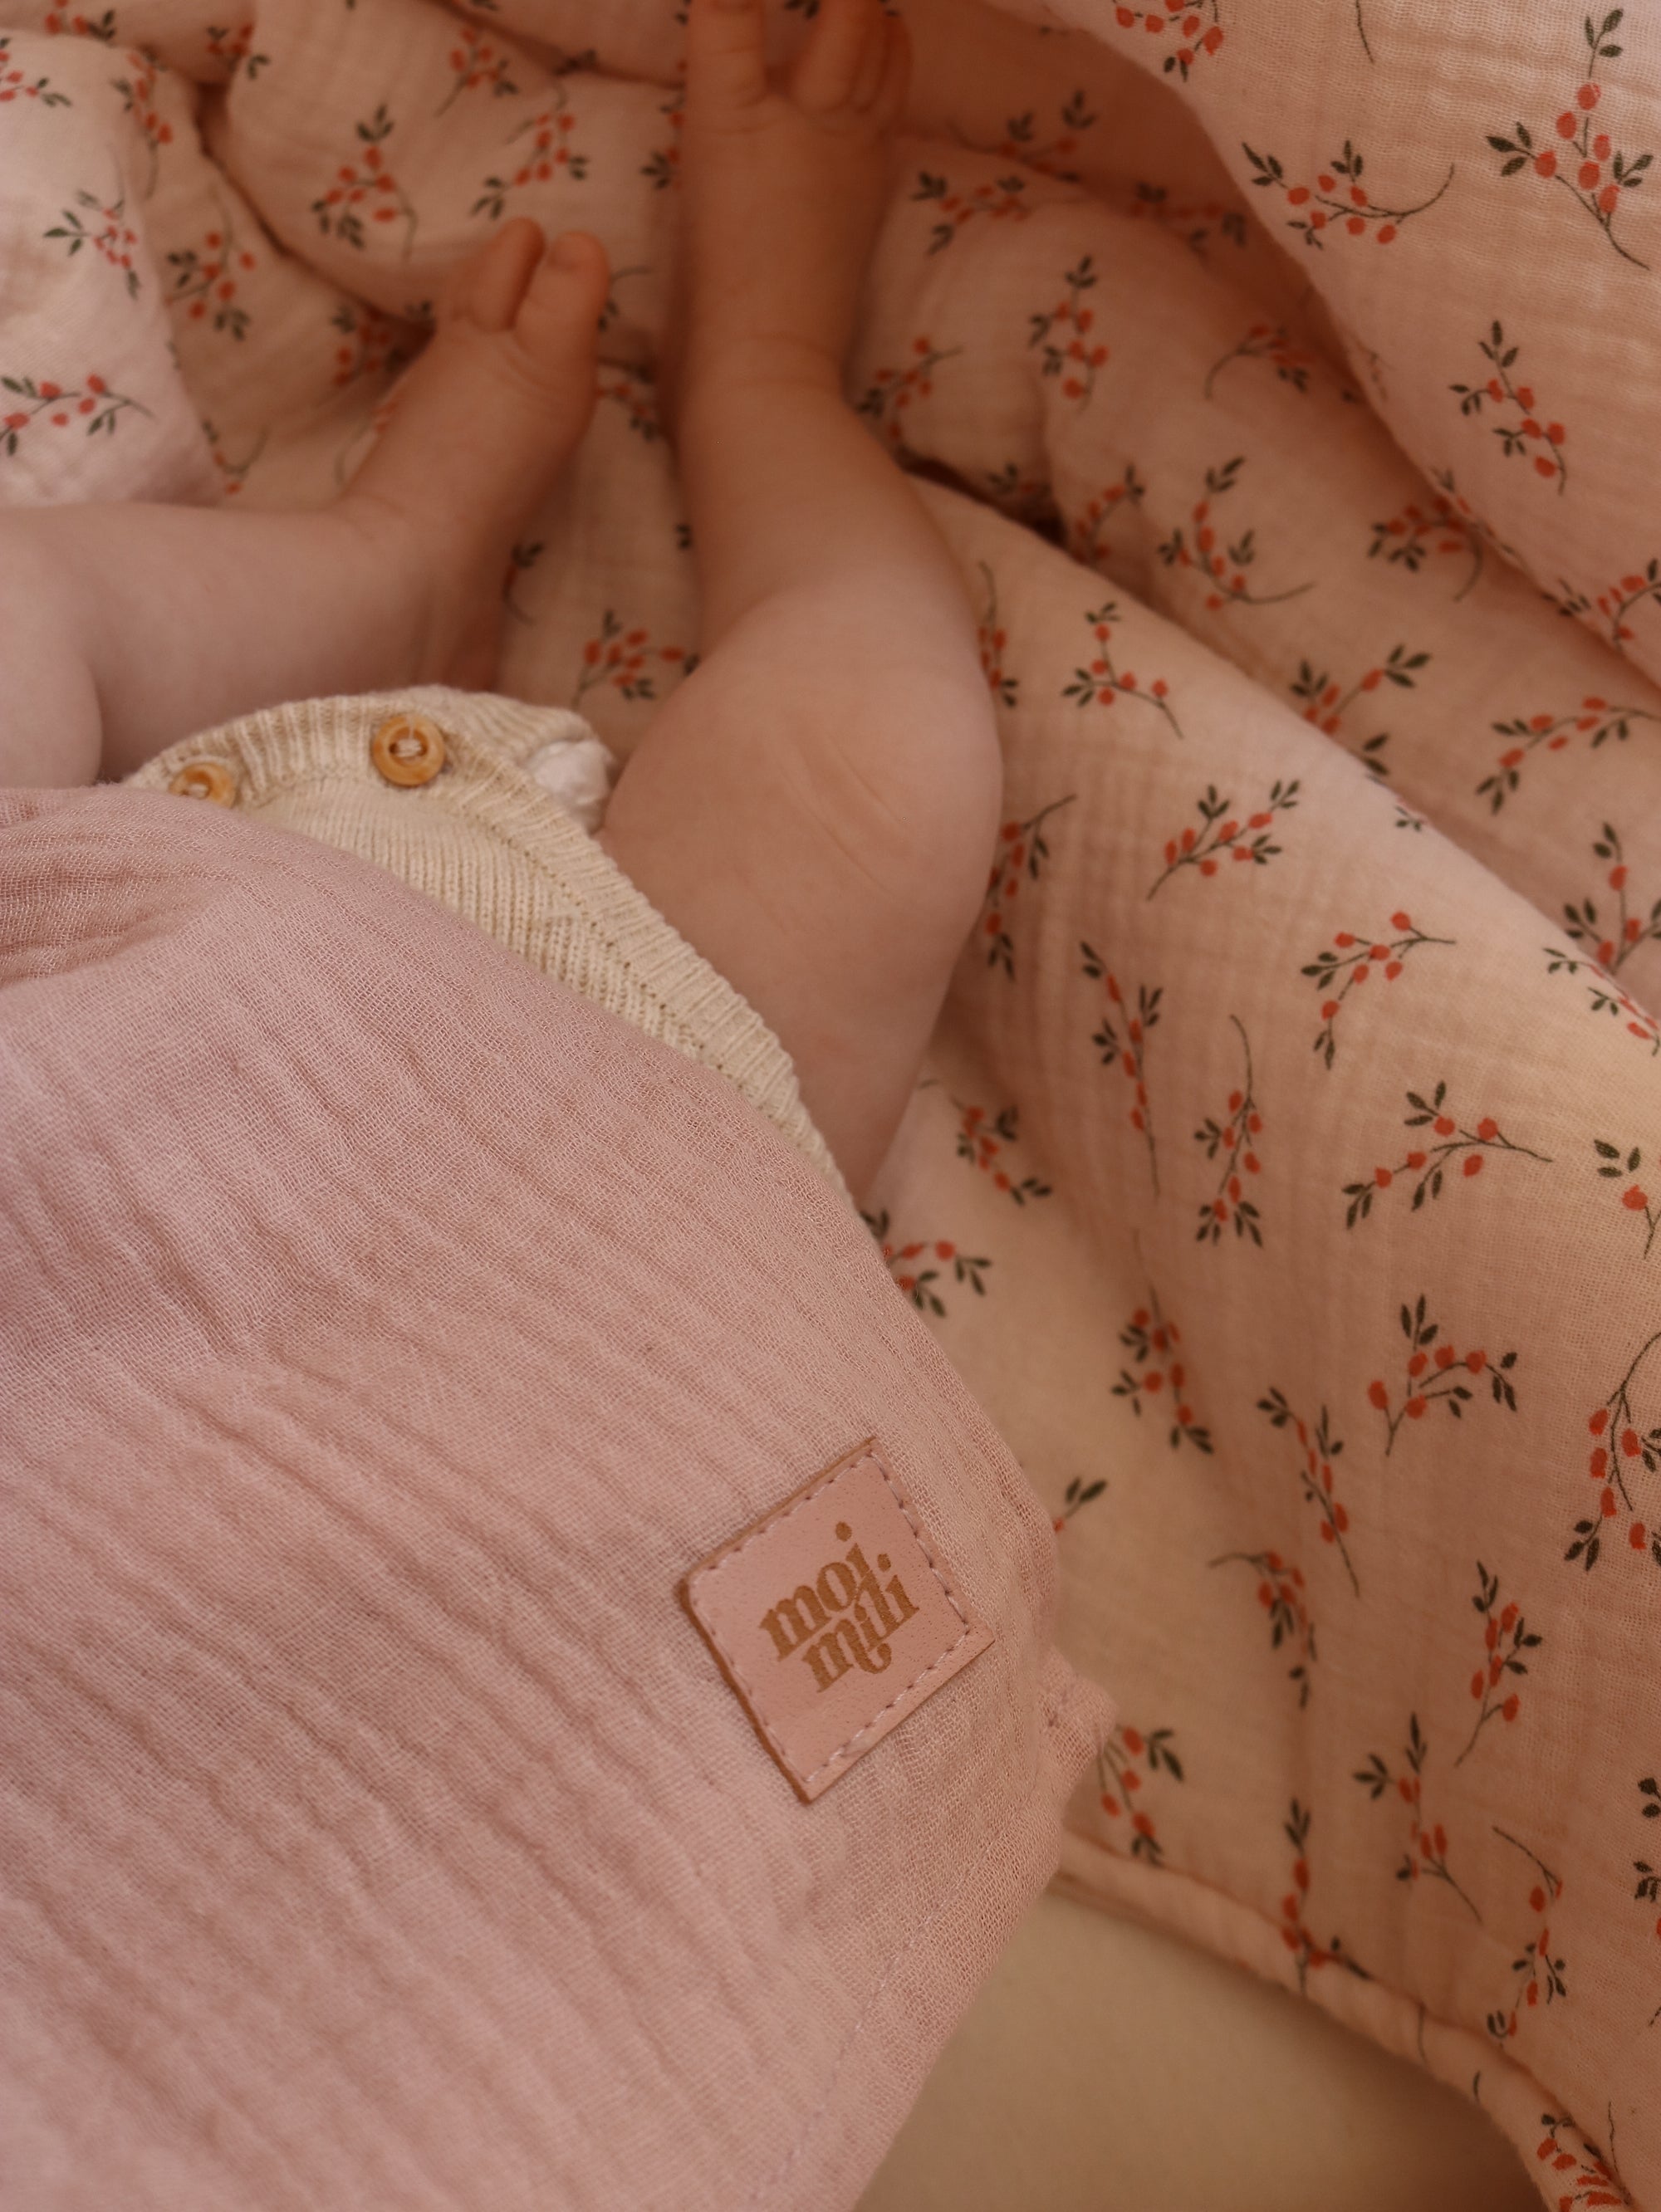 moimili Musselin Baby Wickeldecke "Baby Pink" - Eine kuschelige Swaddle Decke in der Farbe Baby Pink für glückliche Babys